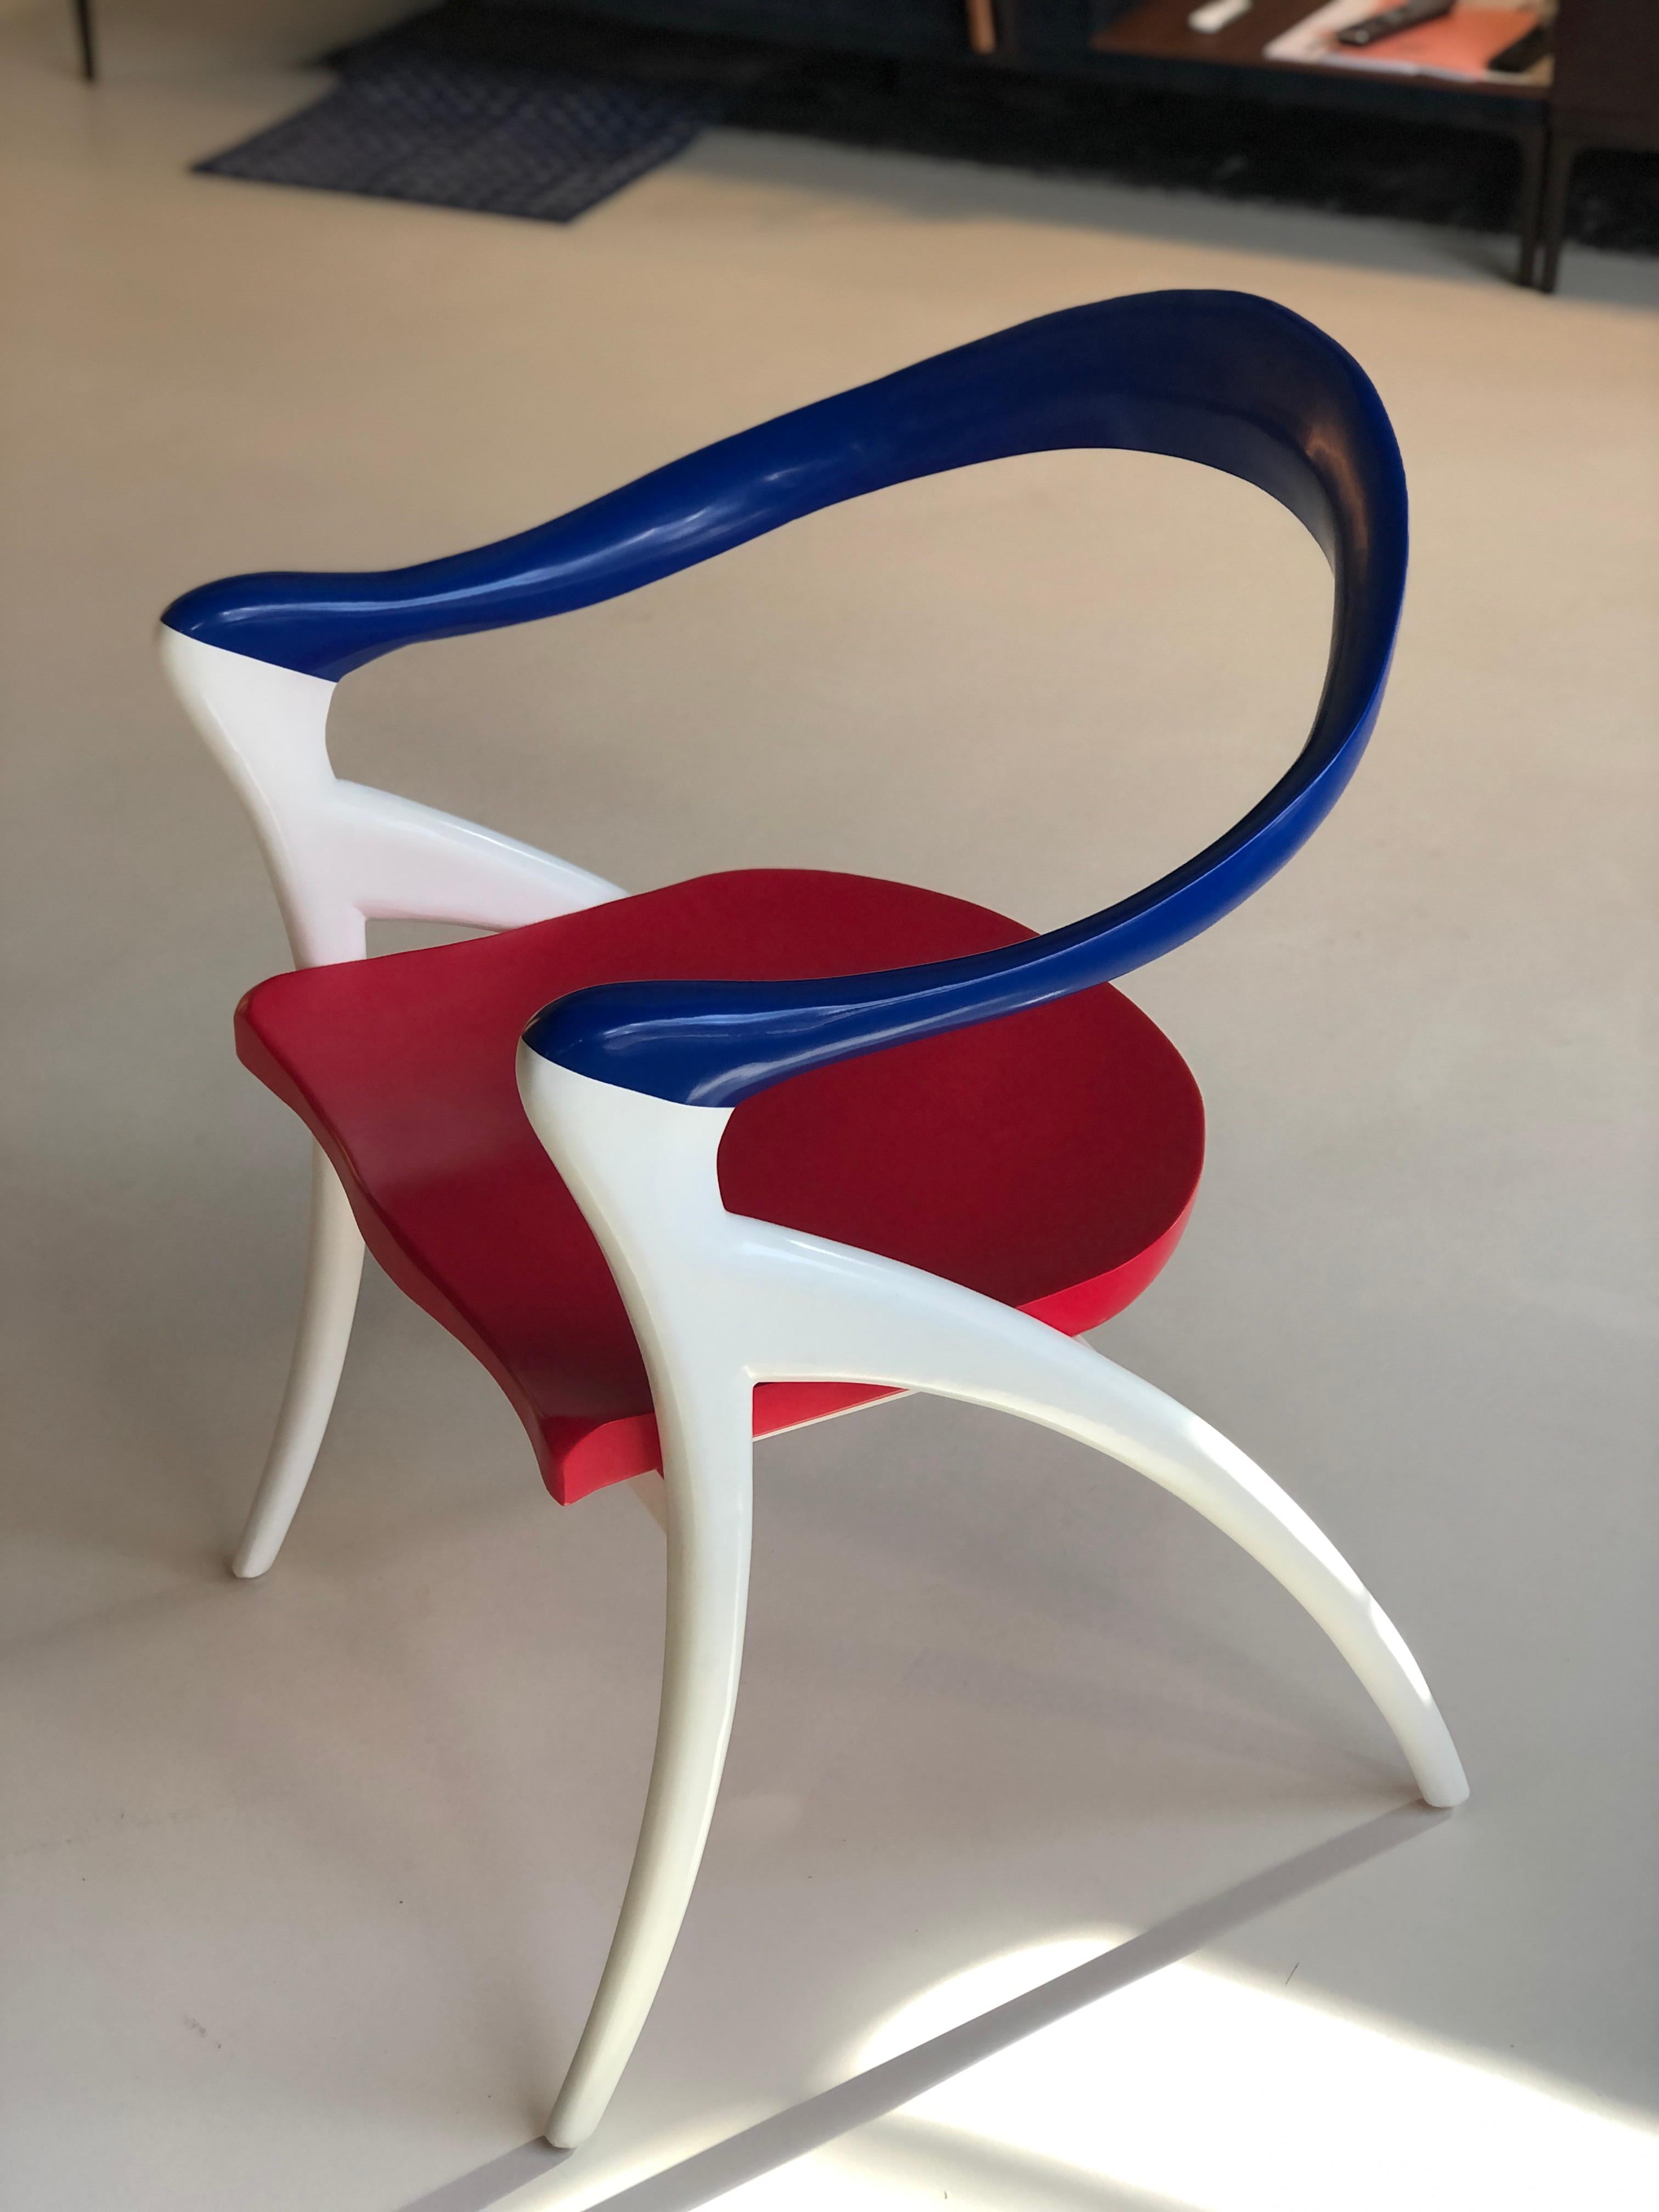 Grands fauteuils d'Olivier de Schrijver (né en 1958) Modèle Ode à la femme avec bandeau ondulé en acajou prolongé par les accoudoirs et la base, sièges incurvés. Peint aux couleurs du drapeau français.
Belgique, 2021.